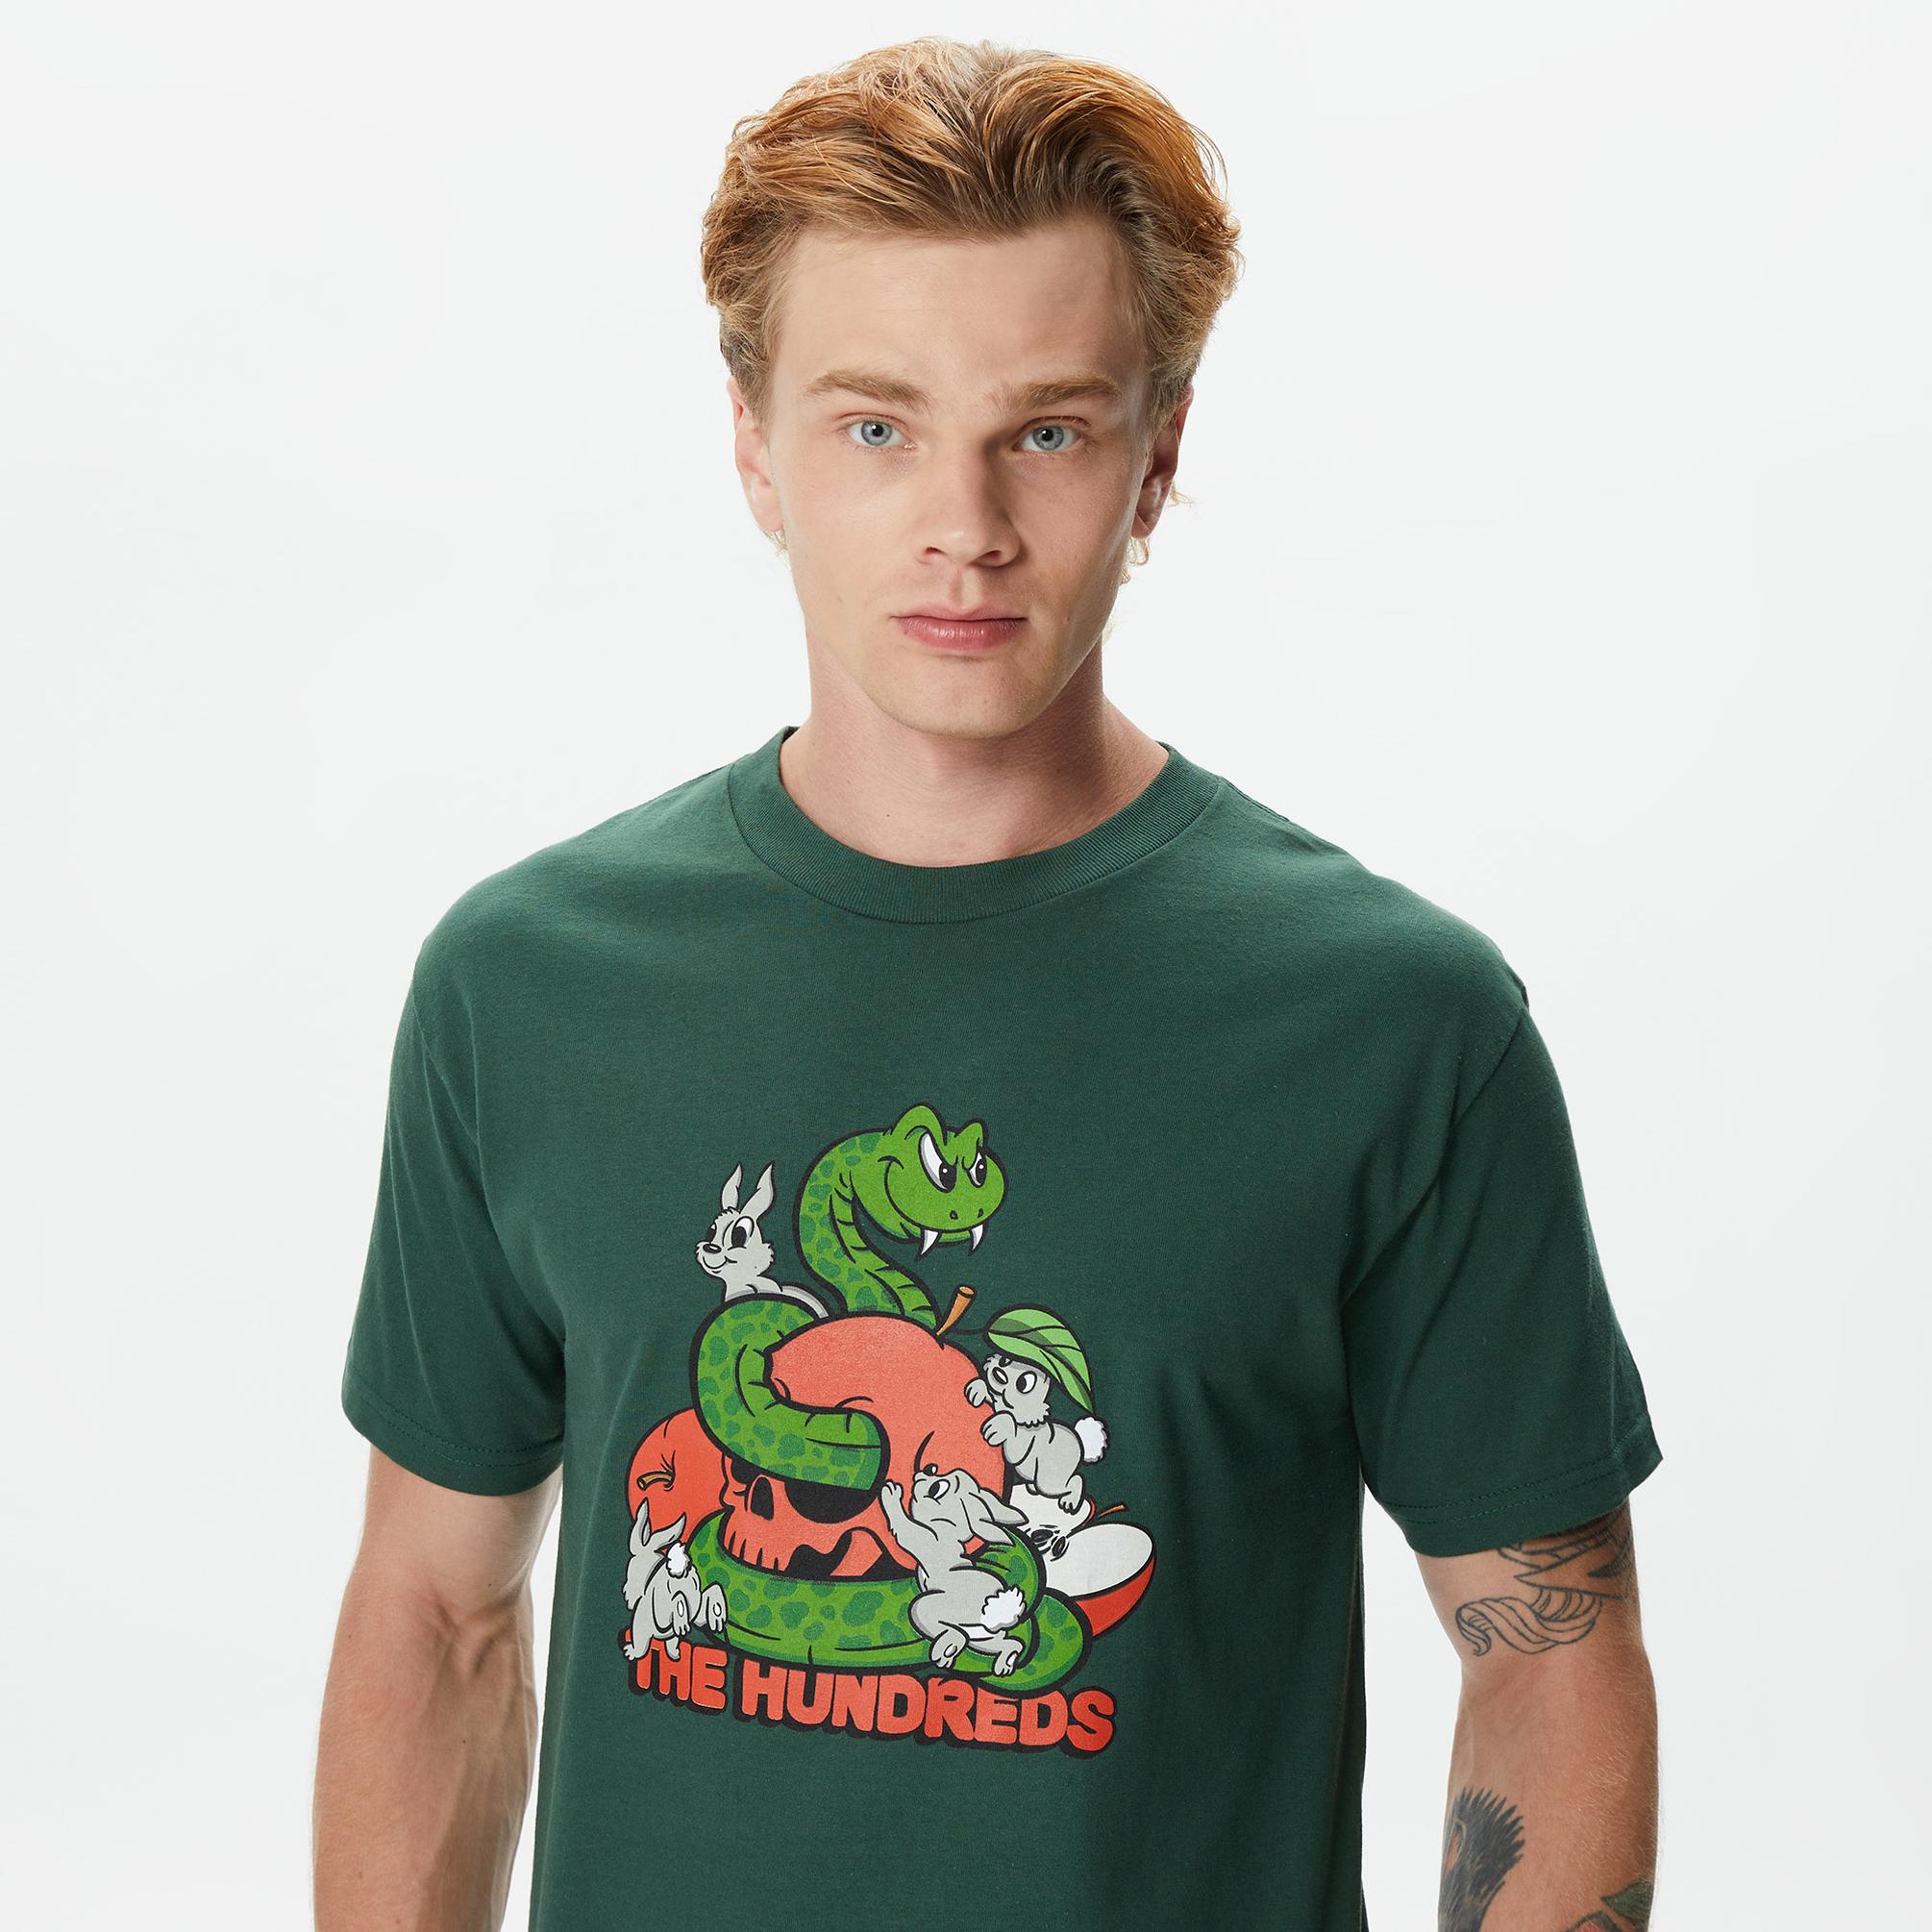  The Hundreds Bad Apples Erkek Yeşil T-Shirt